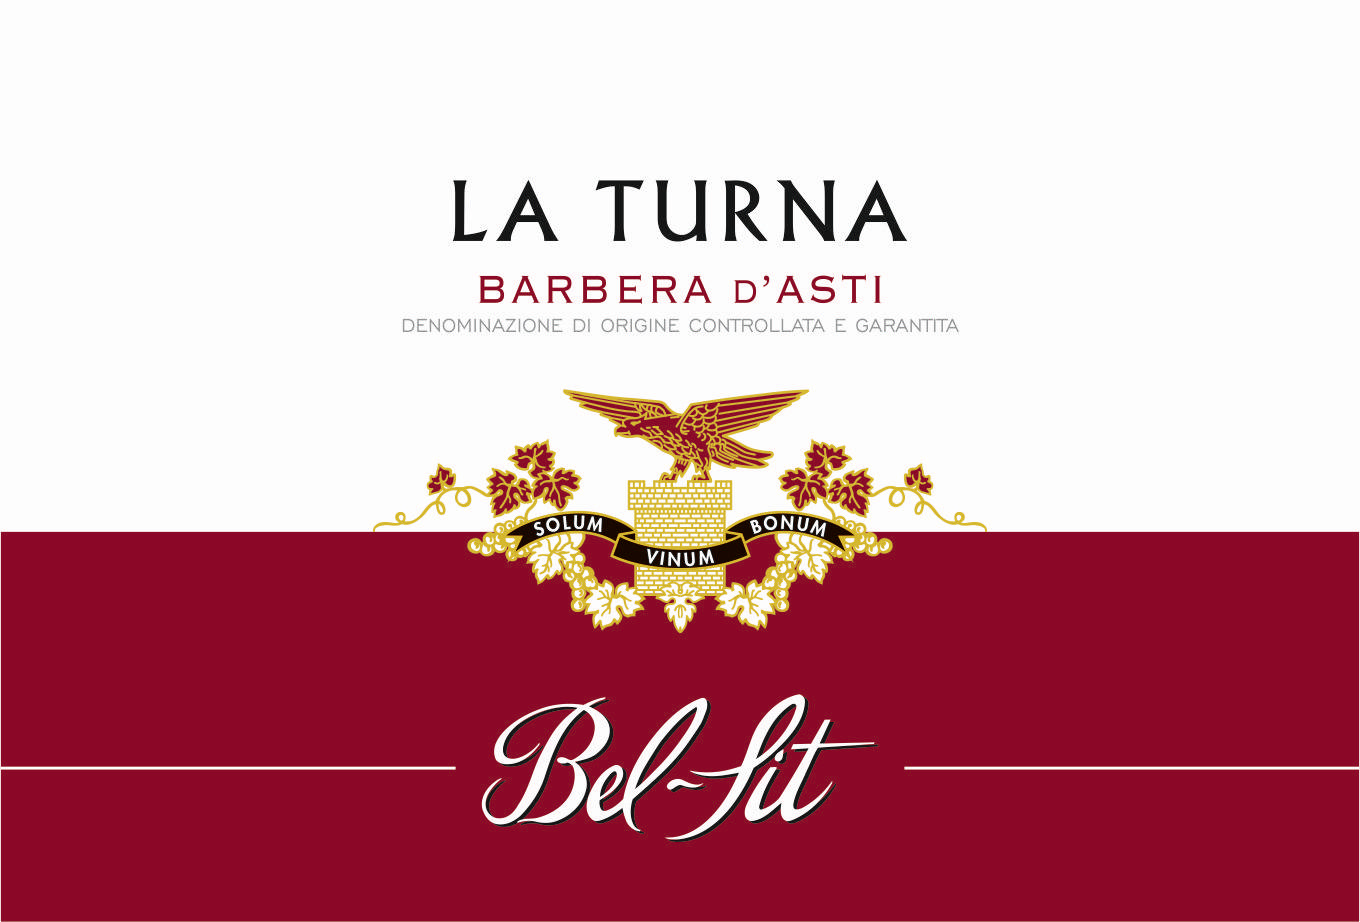 Barbera d'Asti DOCG La Turna 2018 - Bel Sit (label)